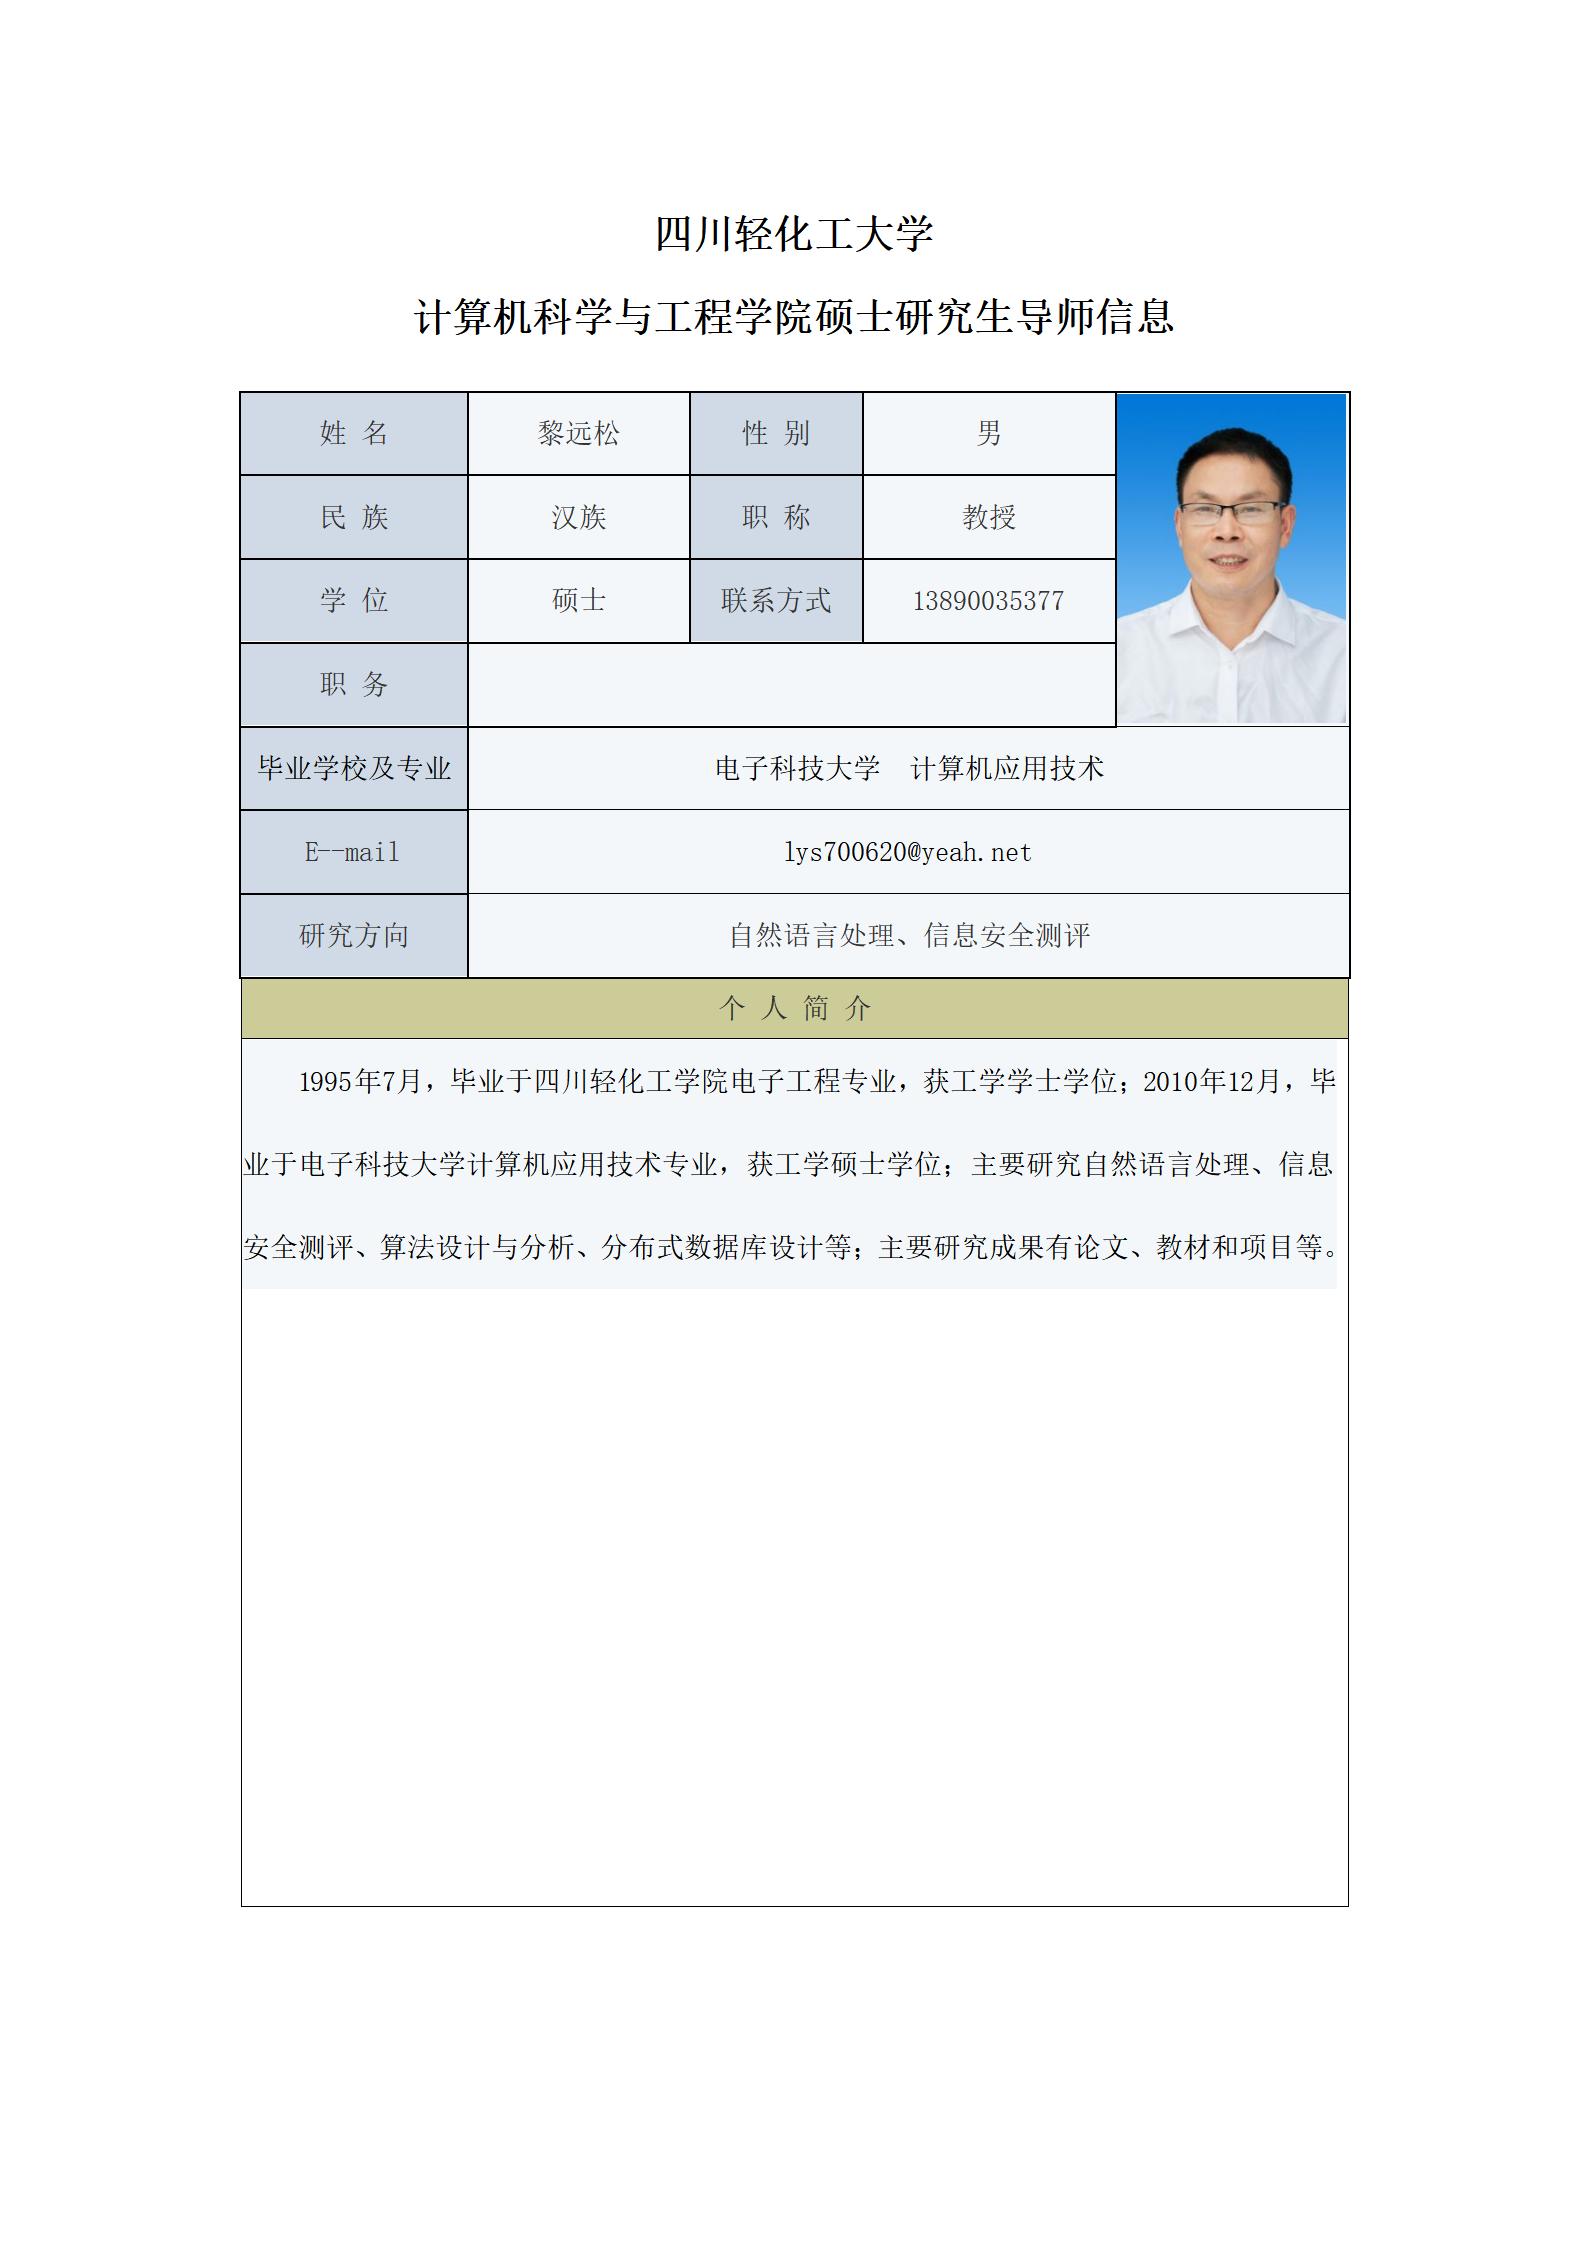 黎远松-2021计算机科学与工程学院硕士生导师信息表（网站）-更新_01.jpg